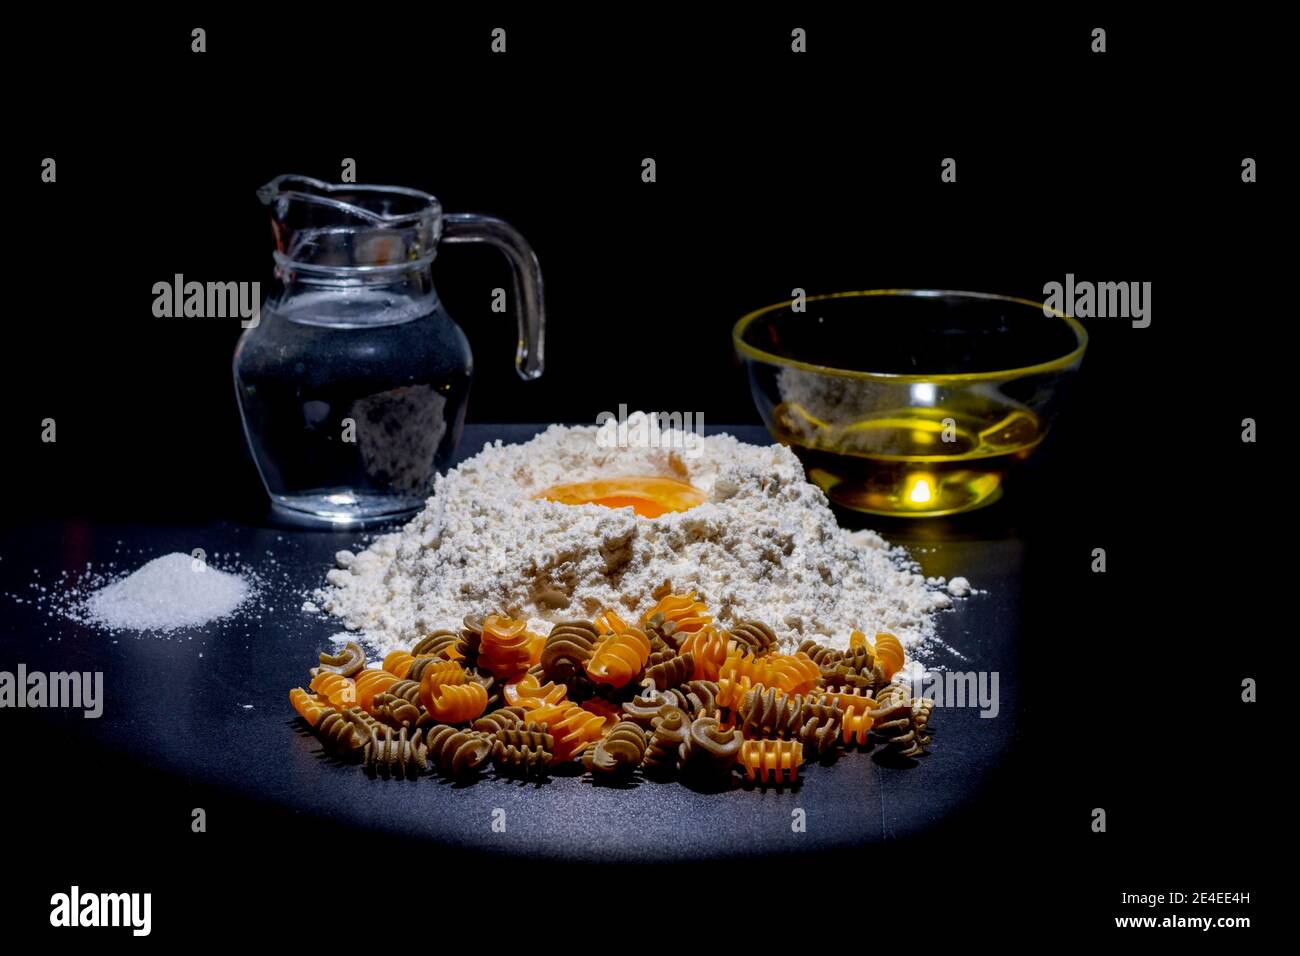 Alle Zutaten, um armonia Pasta zu erhalten. Mehl, Ei, Wasser, Olivenöl und Salz, notwendig, um Spaghetti zu machen. Stockfoto